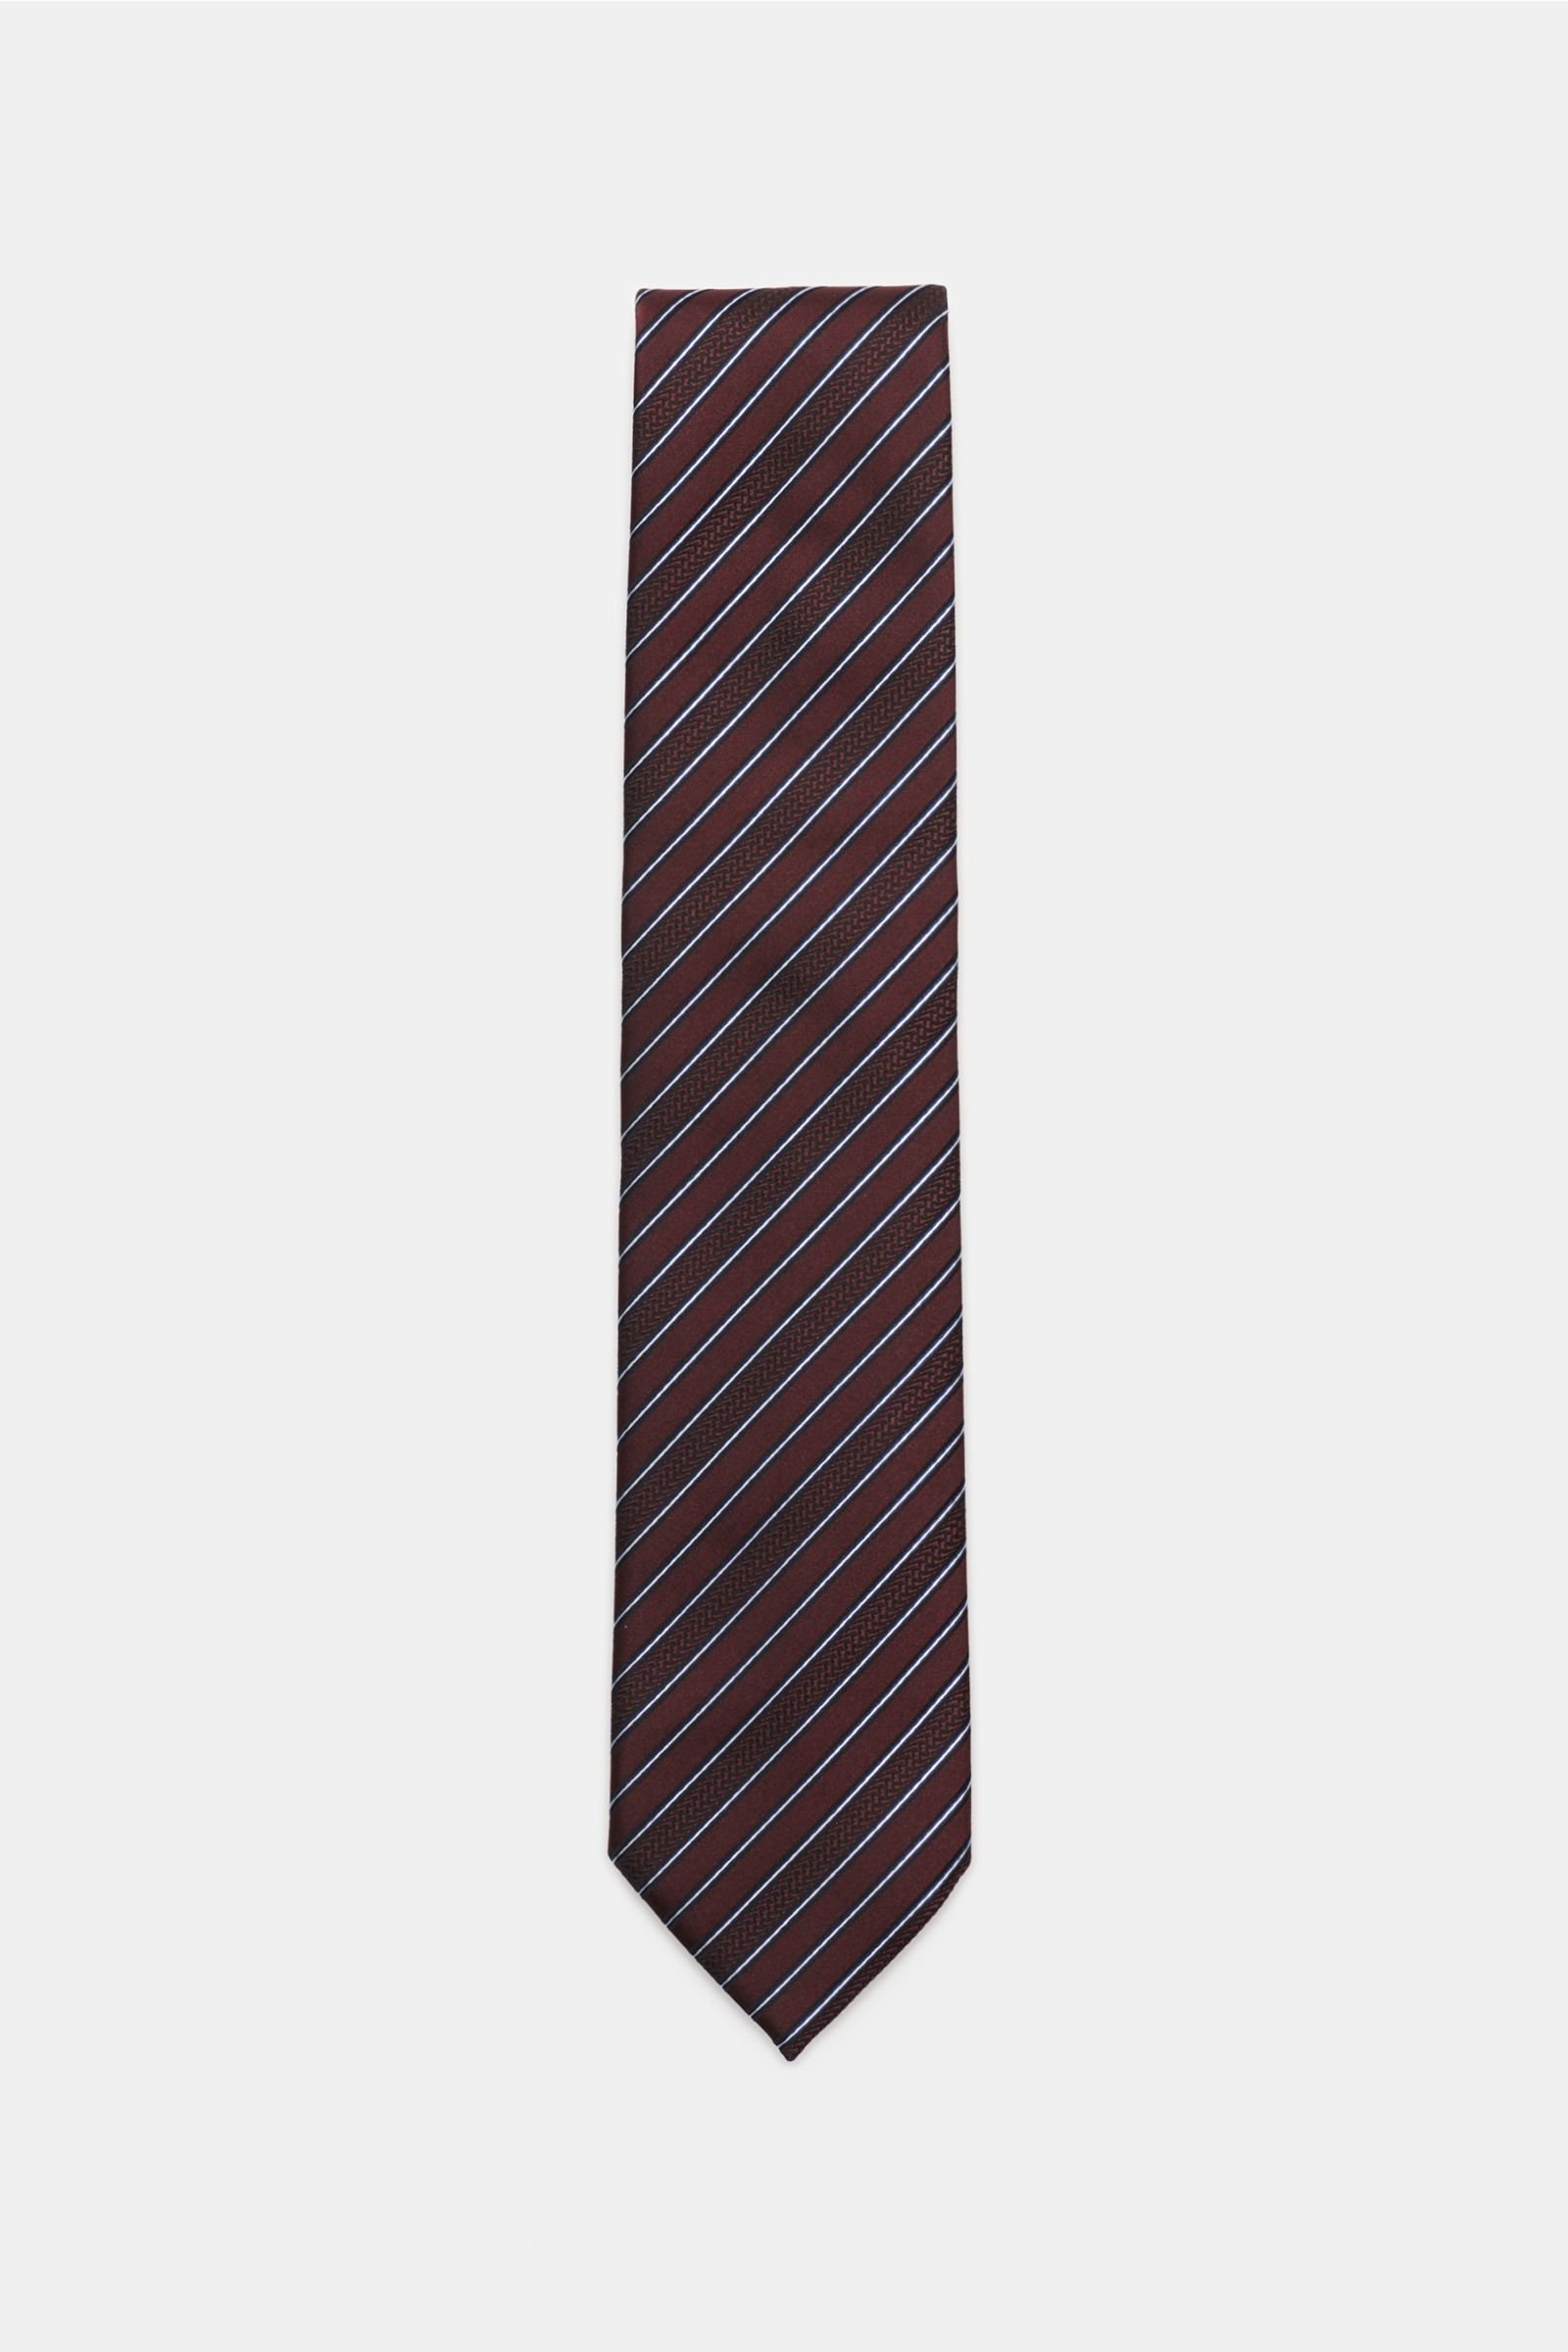 Silk tie burgundy striped